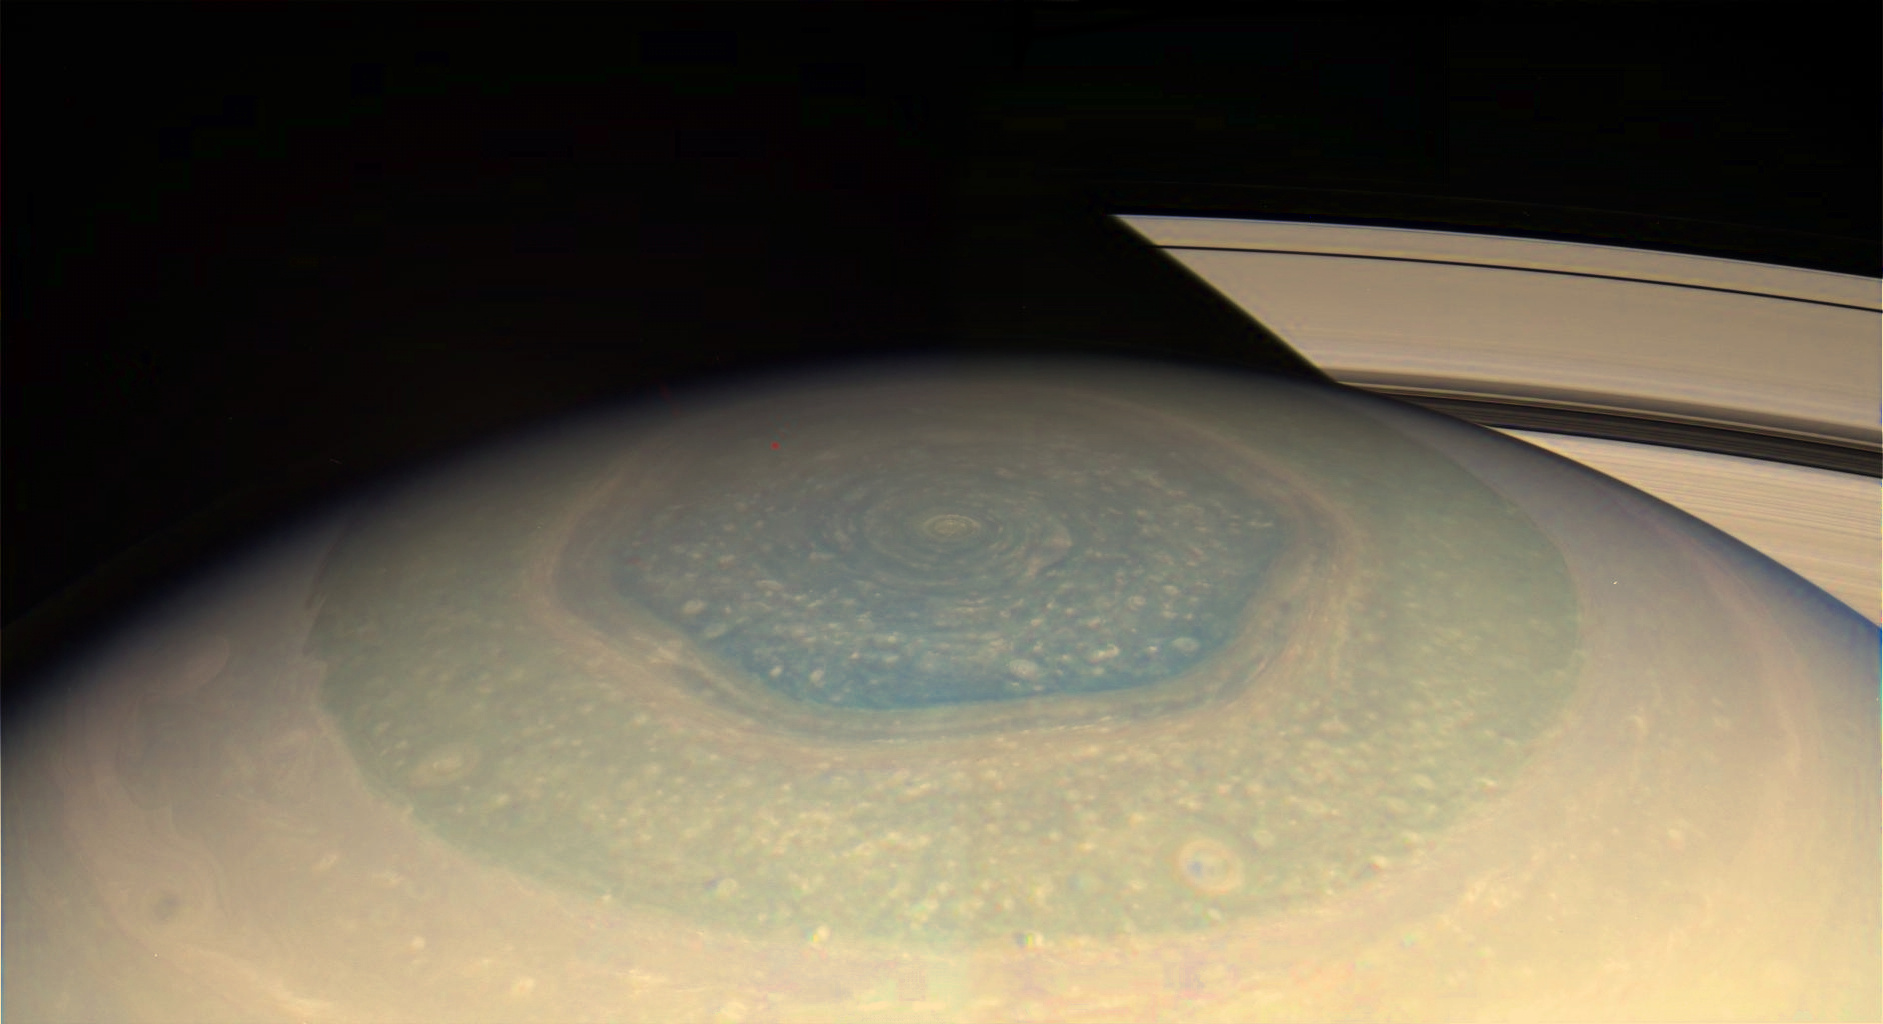 Saturn's north pole hexagon. (Source: NASA)